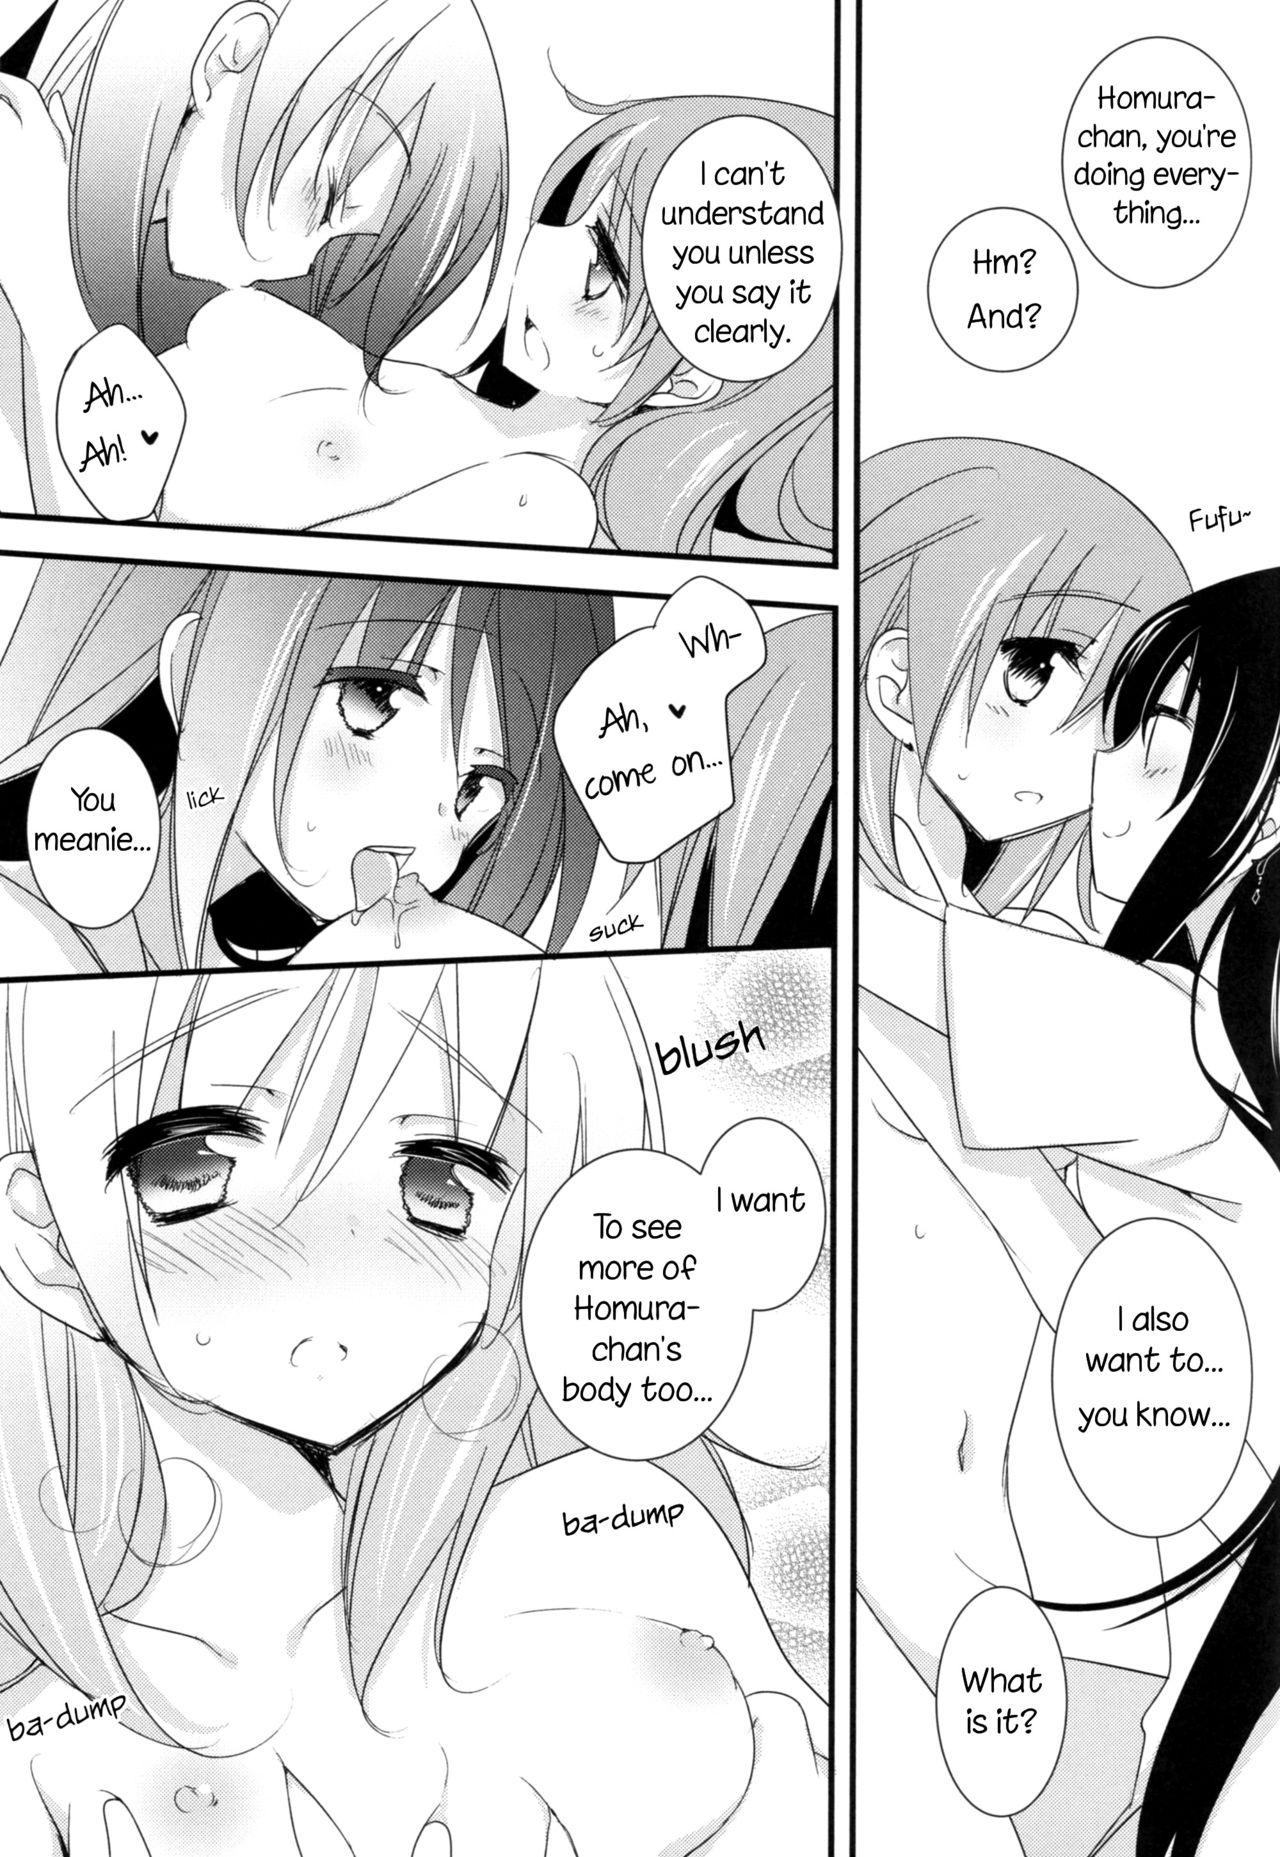 Ffm Watashi no Kanojo wa Itsudemo Tokubetsu ni Sugoku Sugoku Kawaii | My Girlfriend is Always Super-Duper Cute - Puella magi madoka magica Porn Star - Page 10